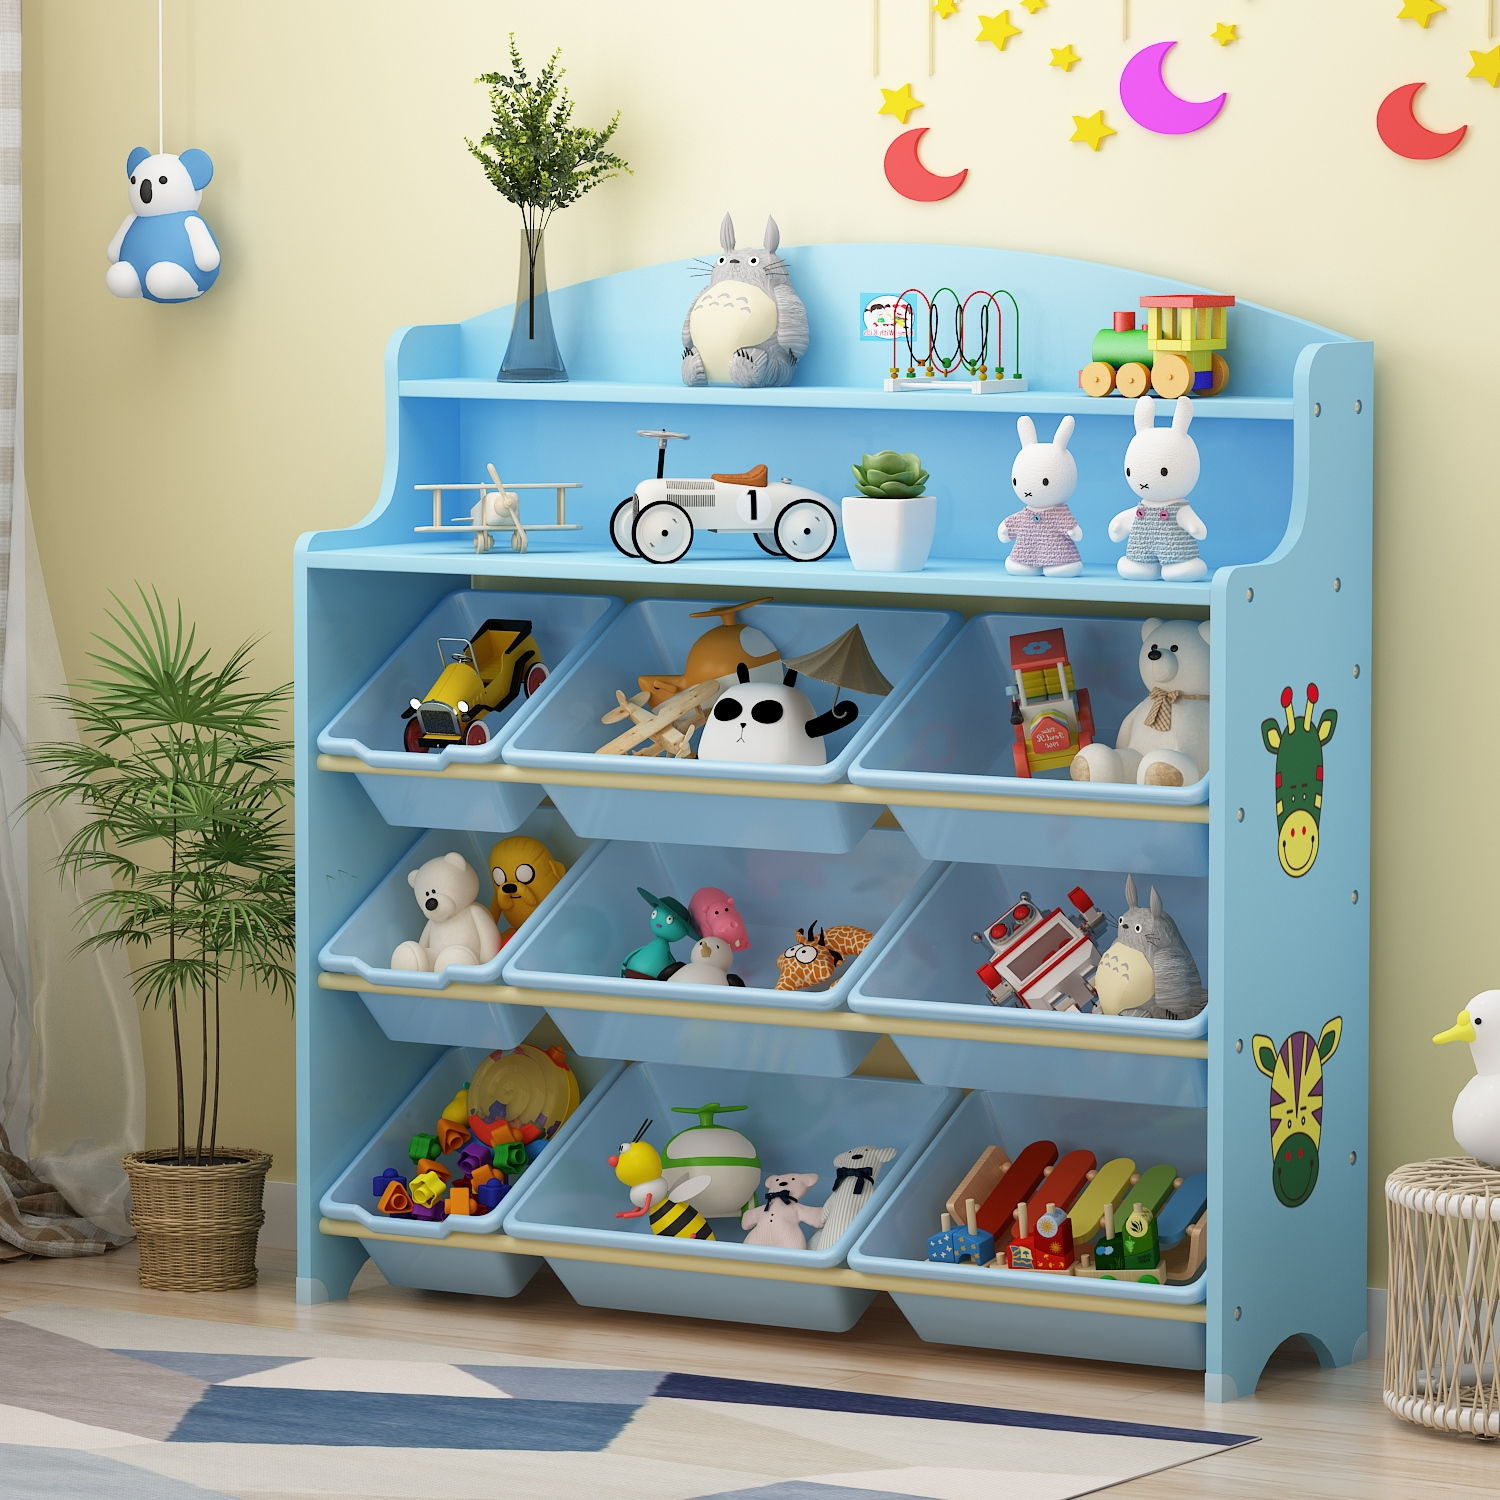 【免運】開發票 美雅閣| 兒童玩具收納架玩具收納架子置物架整理架子收納櫃寶寶多層儲物架